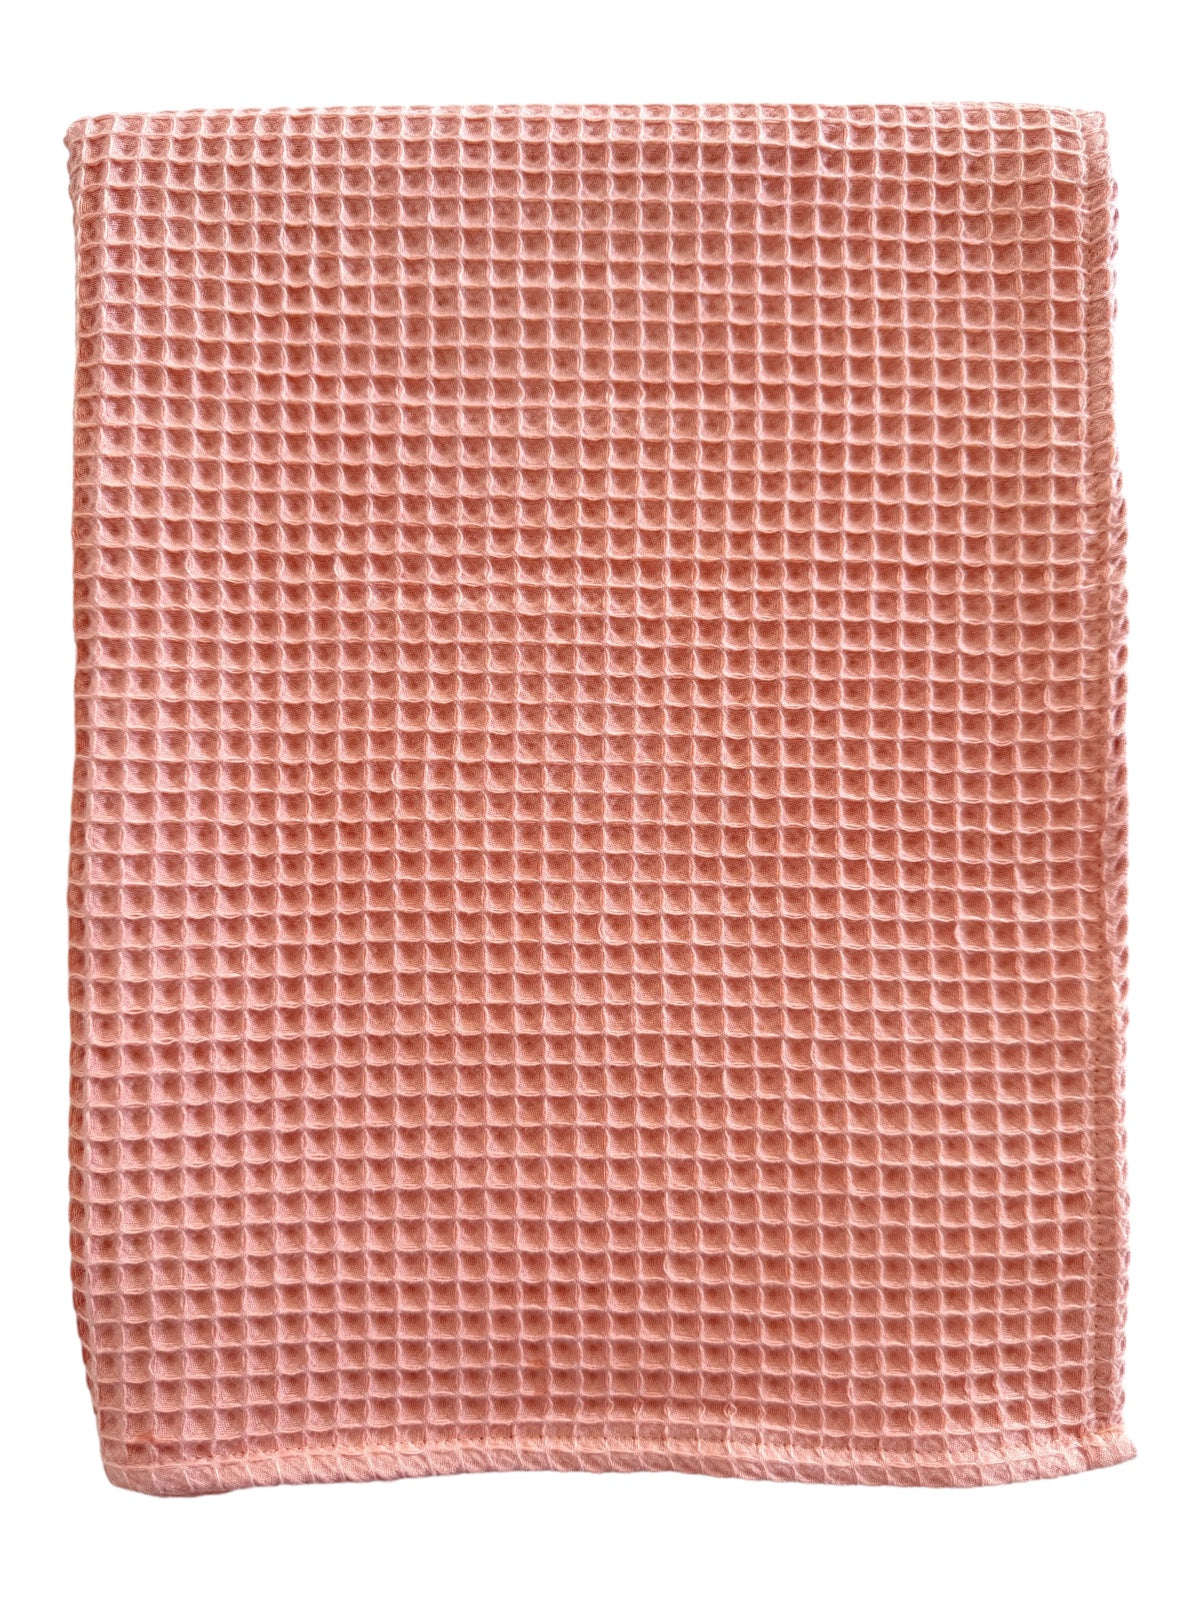 Phufy® Waffle Blanket, Rosy